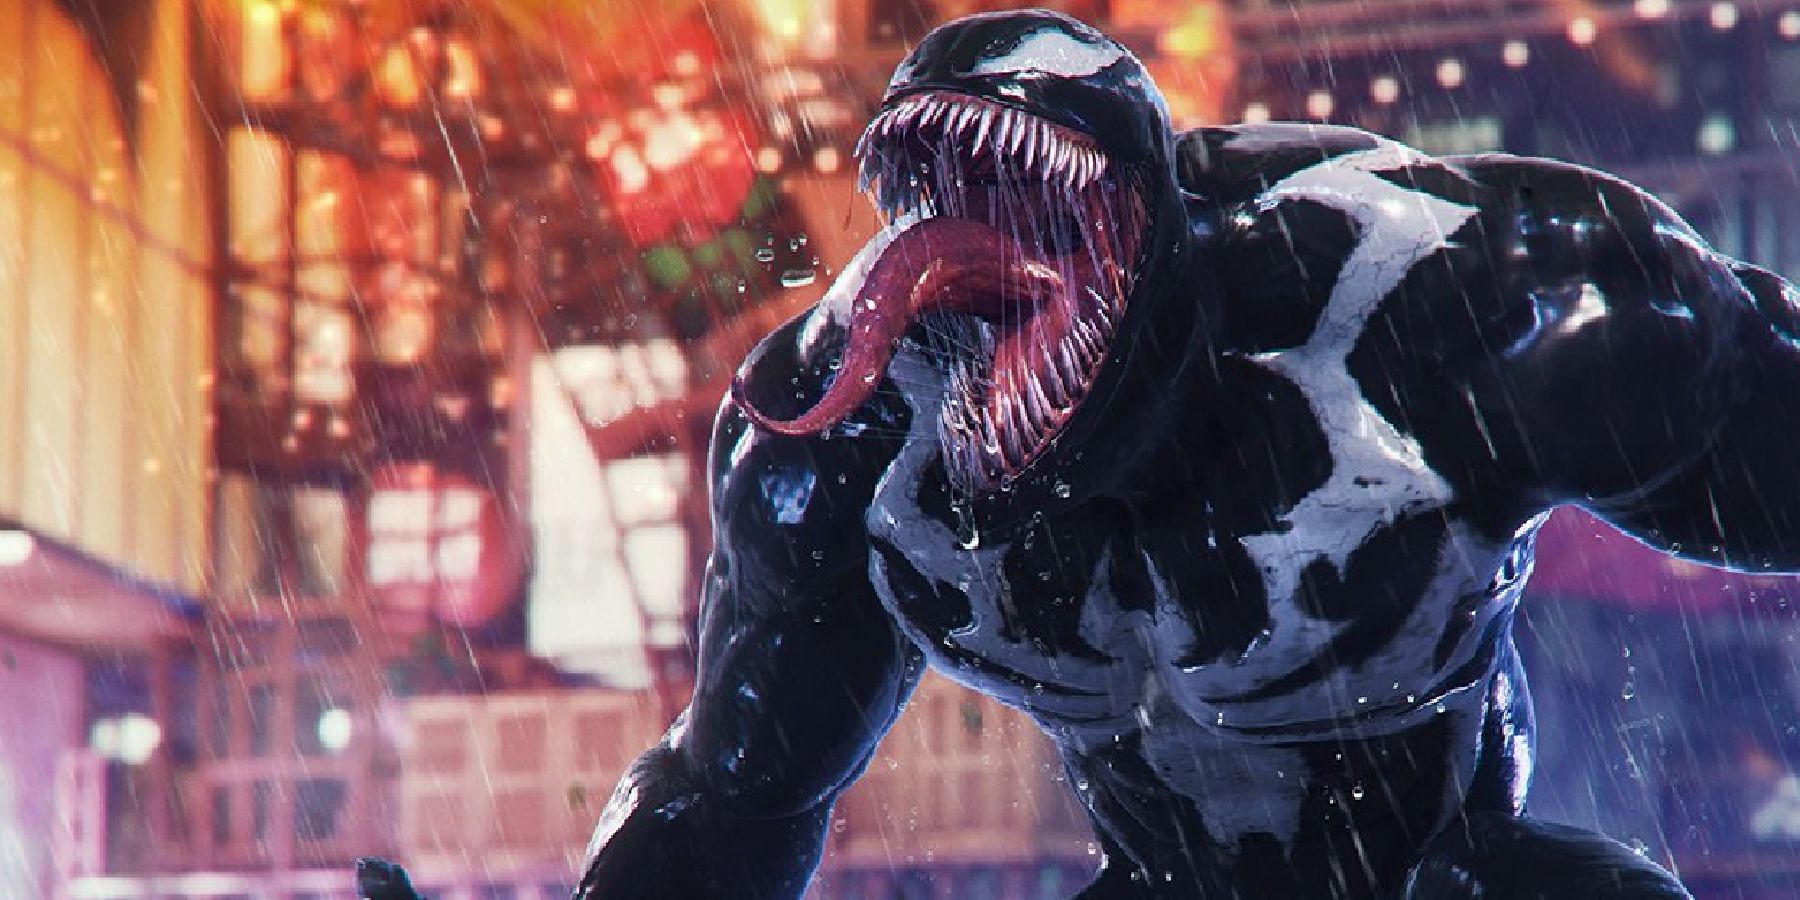 Marvel's Spider-Man 2' brings Venom to PlayStation 5 in 2023